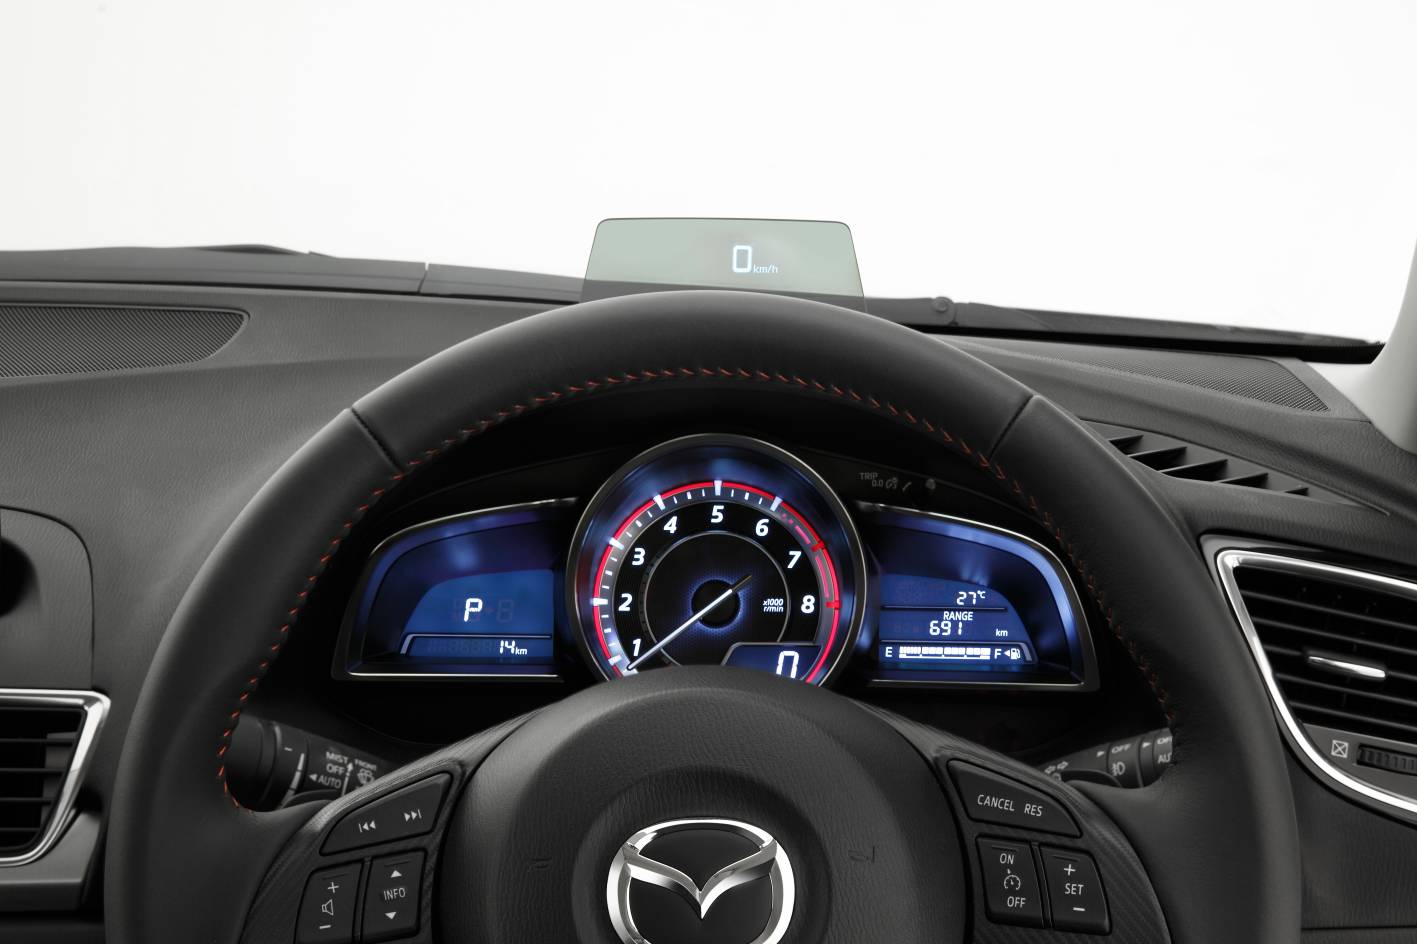 2014-Mazda3-instruments.jpg